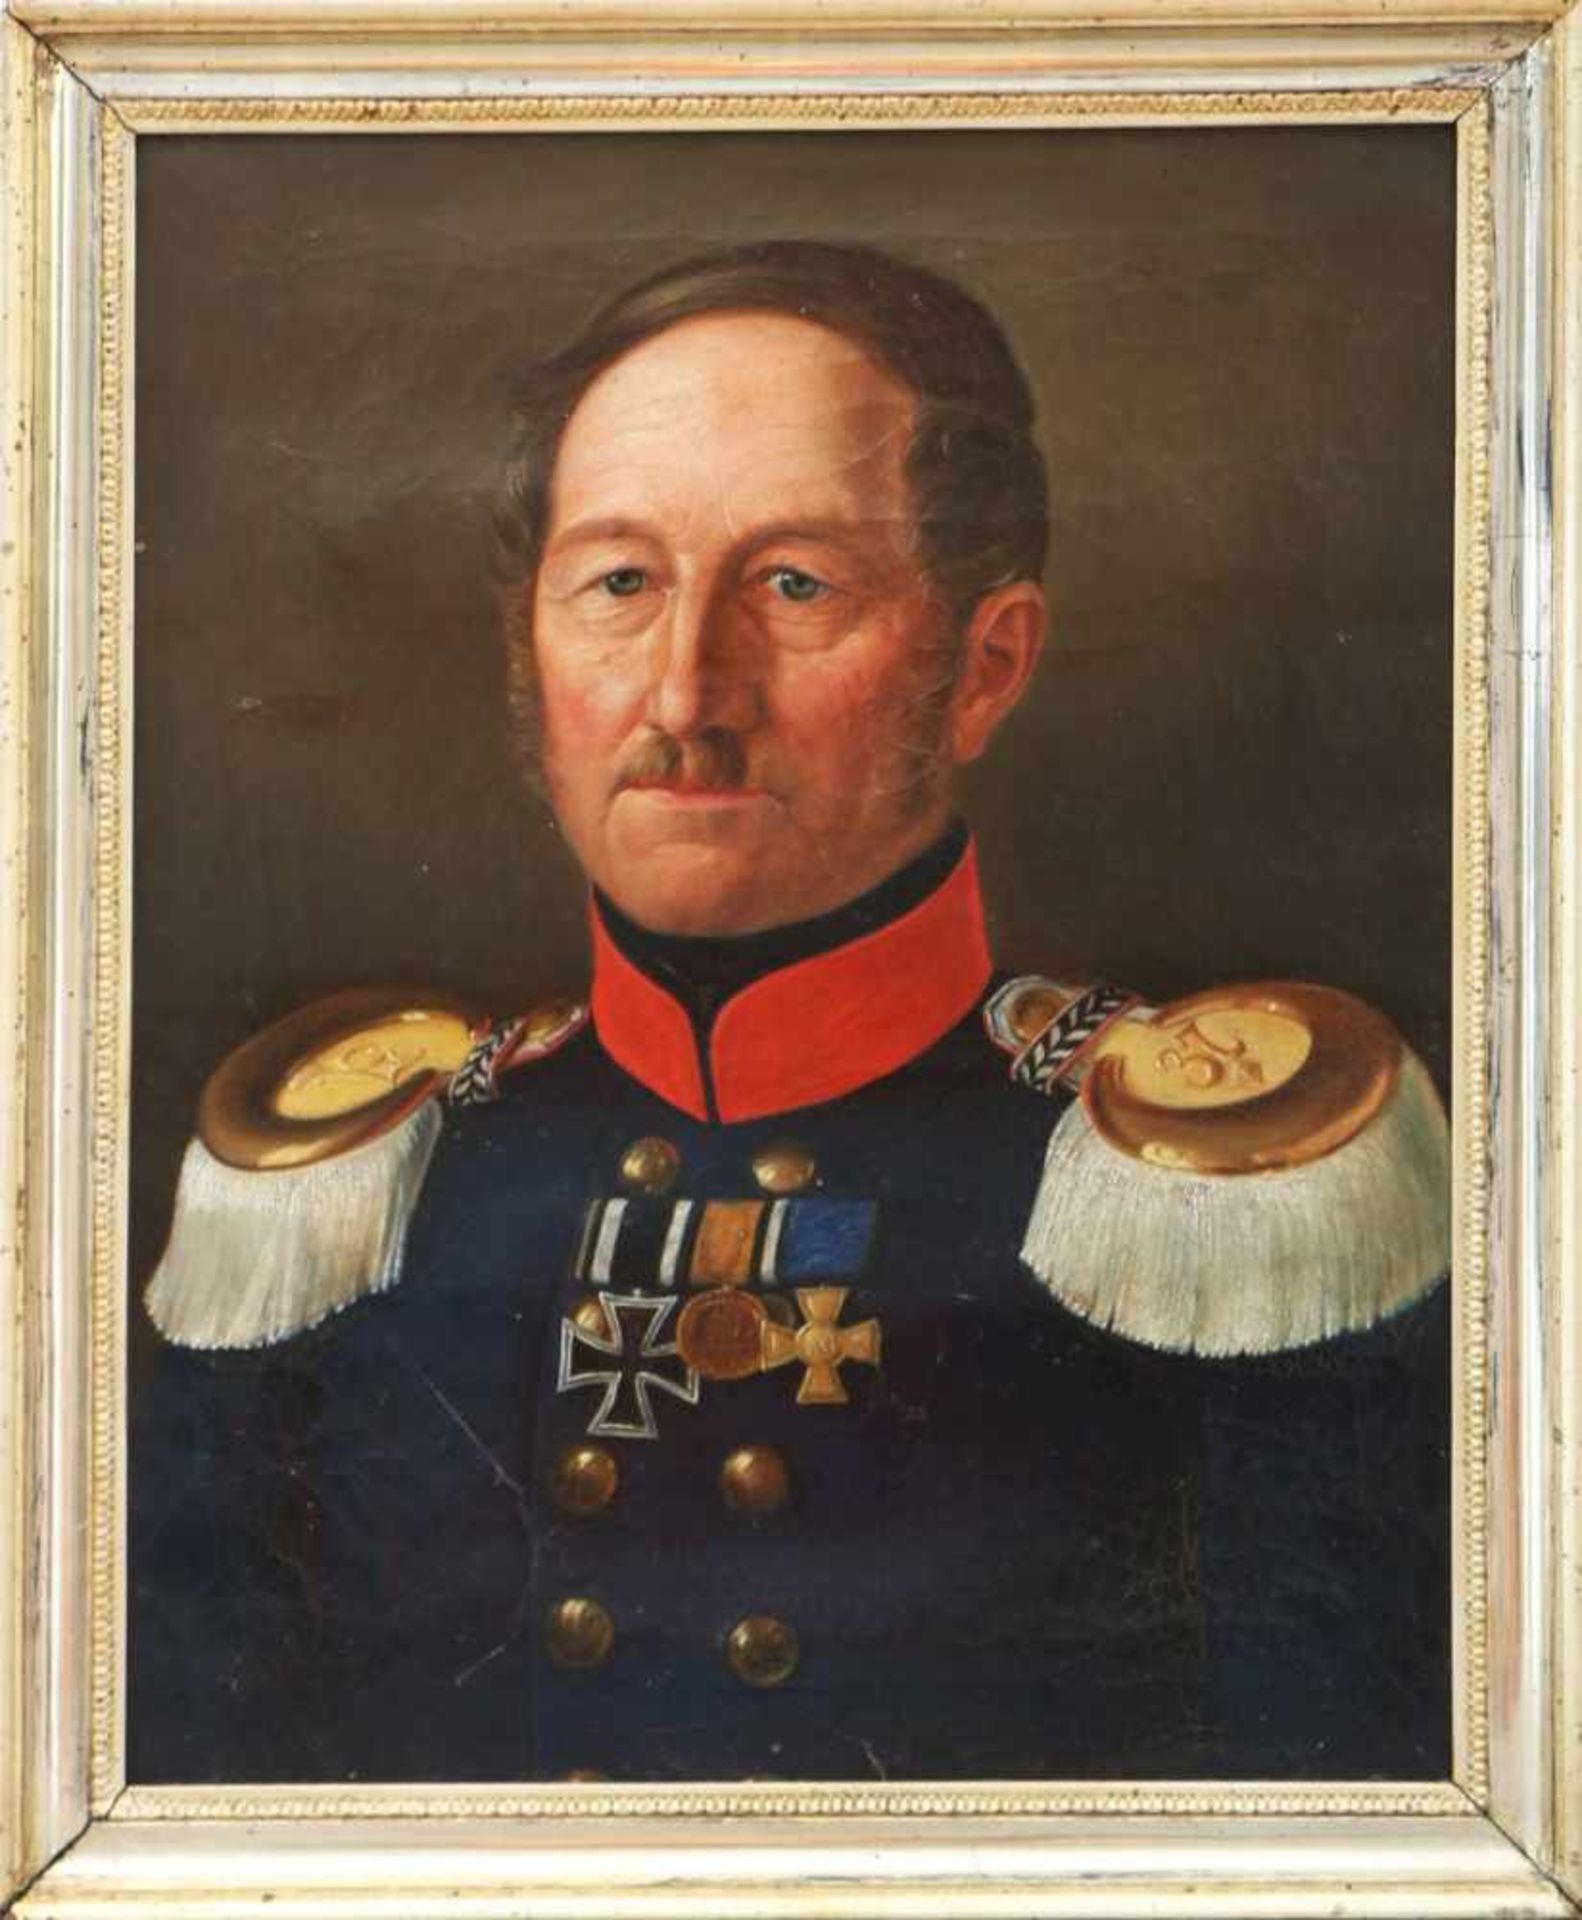 ANONYMÖl auf Leinwand, ¨Porträt eines preußischen Offiziers¨, 19. Jhdt., unsigniert, ca. 56x45cm,